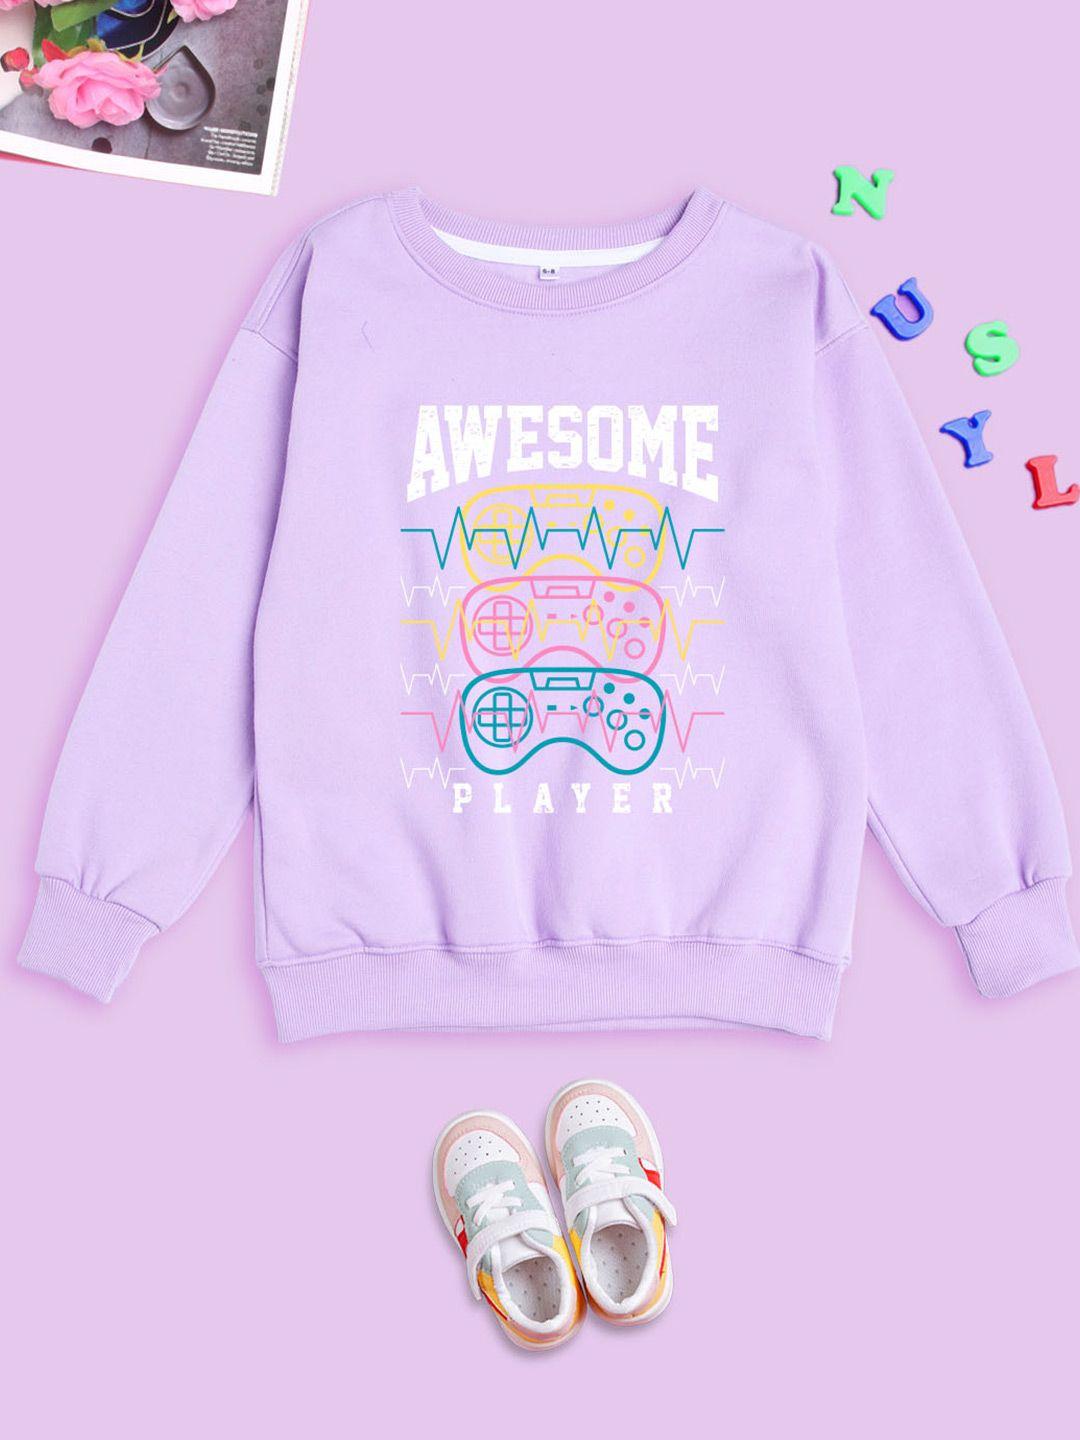 nusyl unisex kids printed sweatshirt